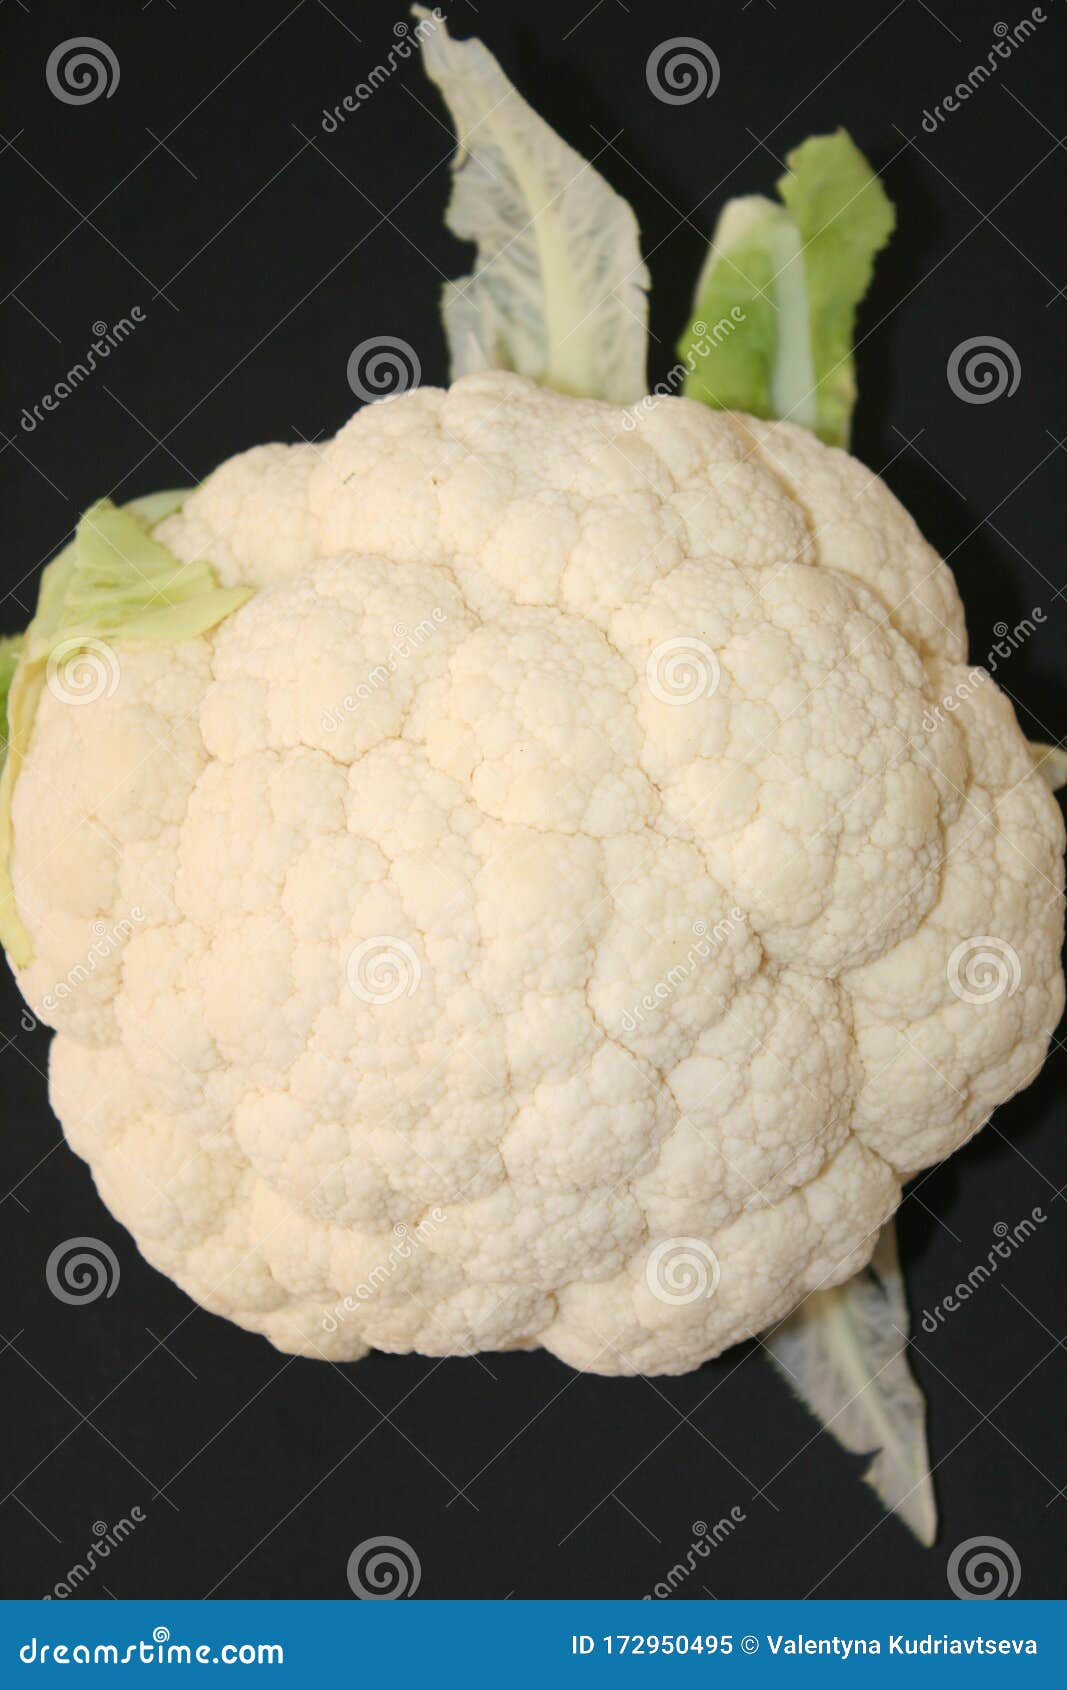 cauliflower on a black background